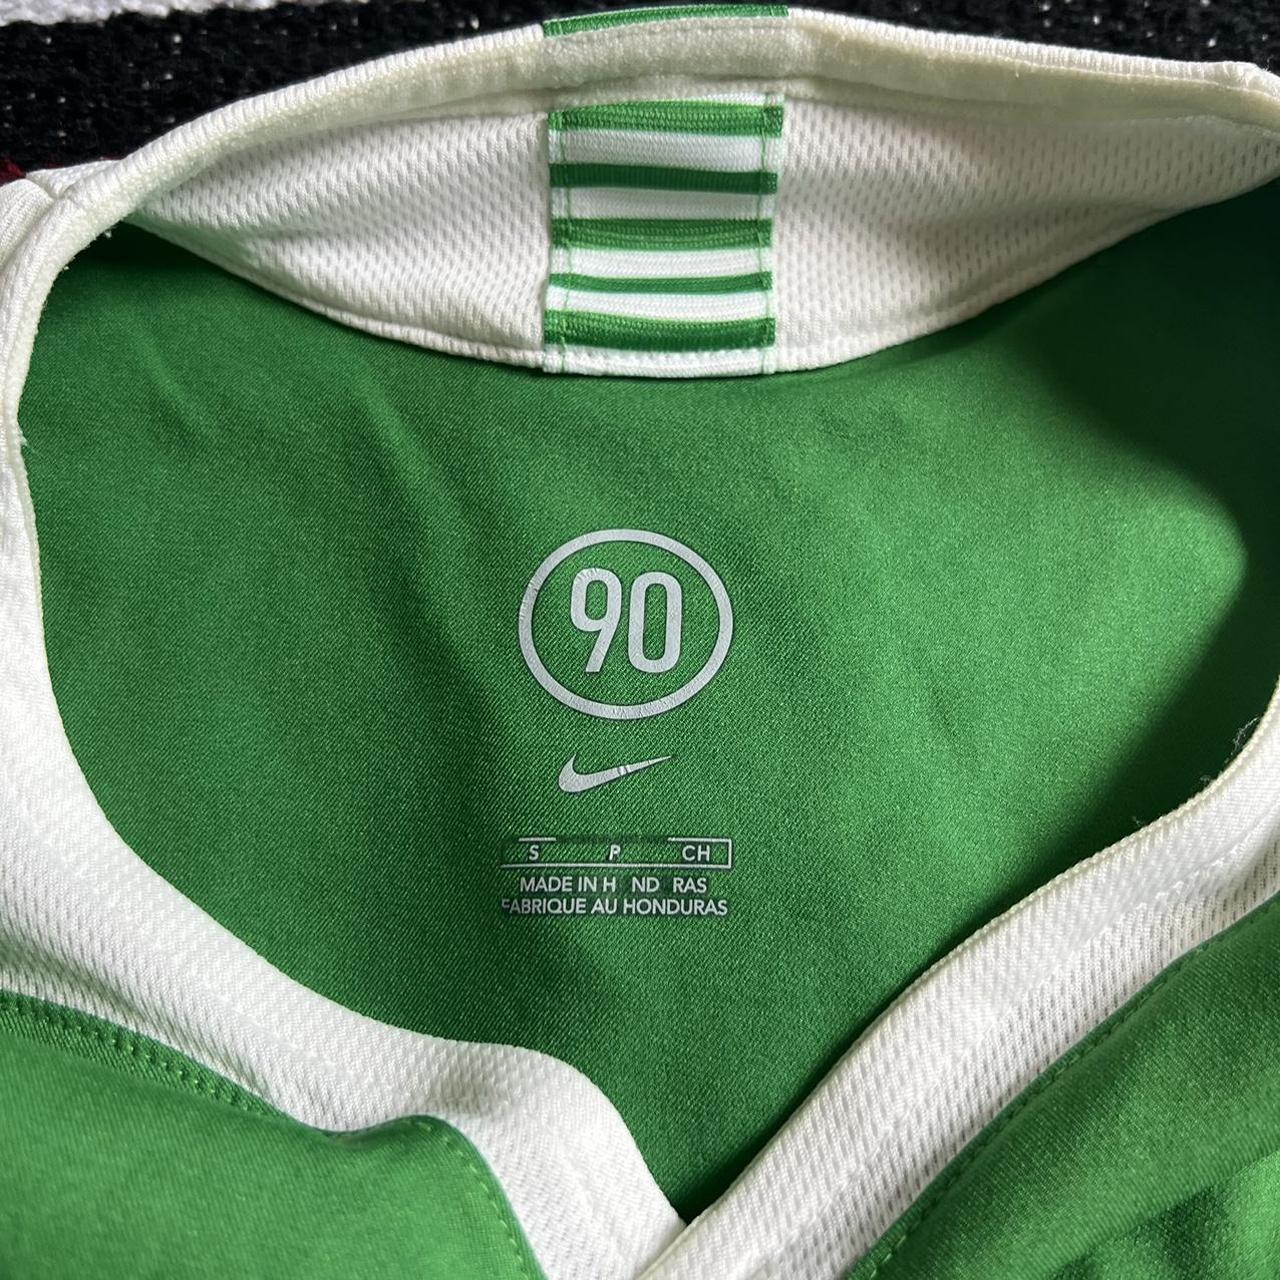 2005-2006 Celtic Nike away jersey. No cracks at all - Depop